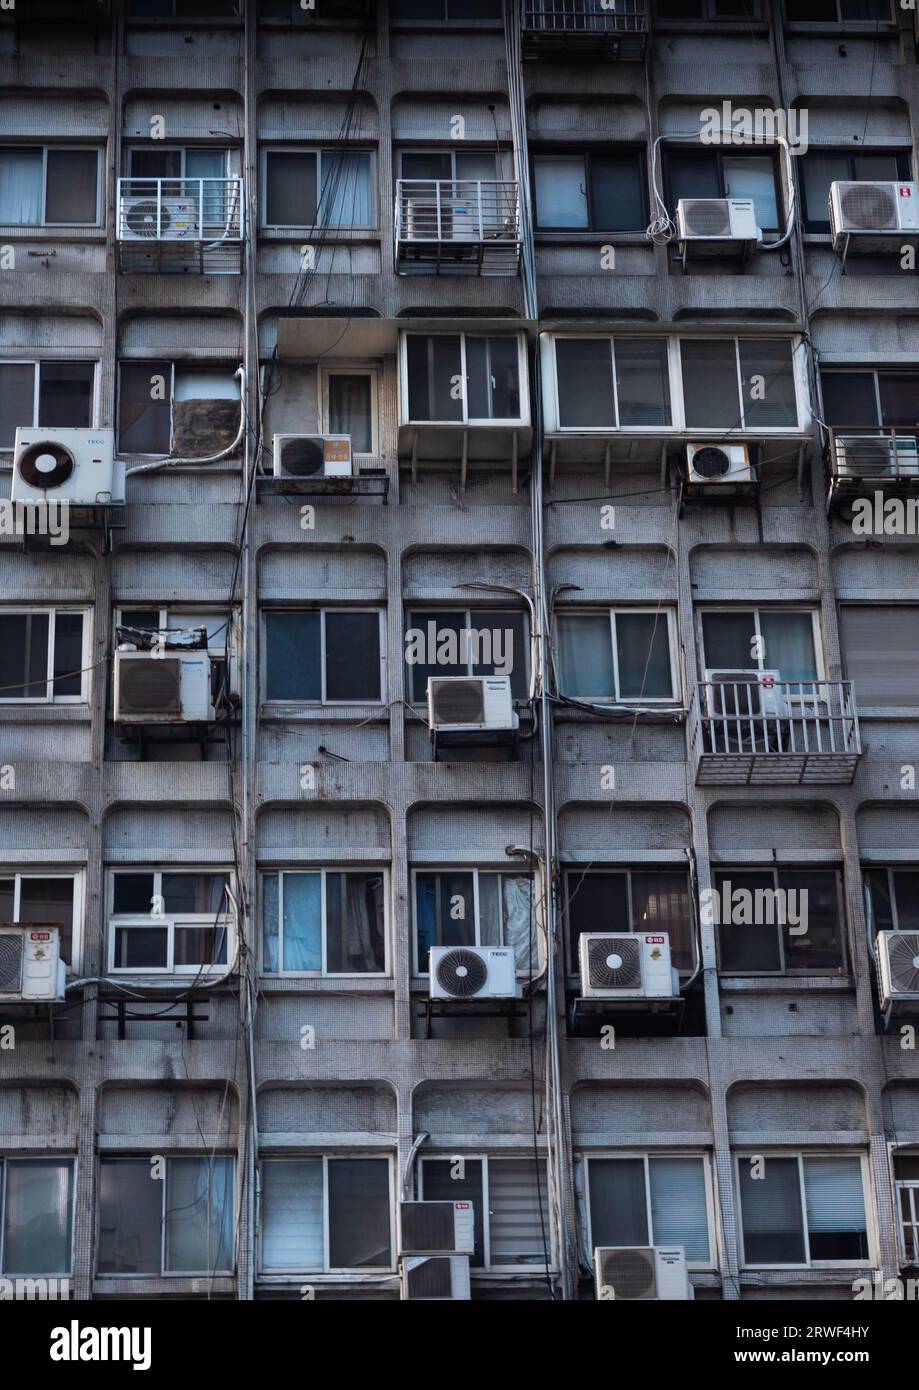 Aire acondicionado en un edificio, distrito de Zhongzheng, Taipei, Taiwán Foto de stock